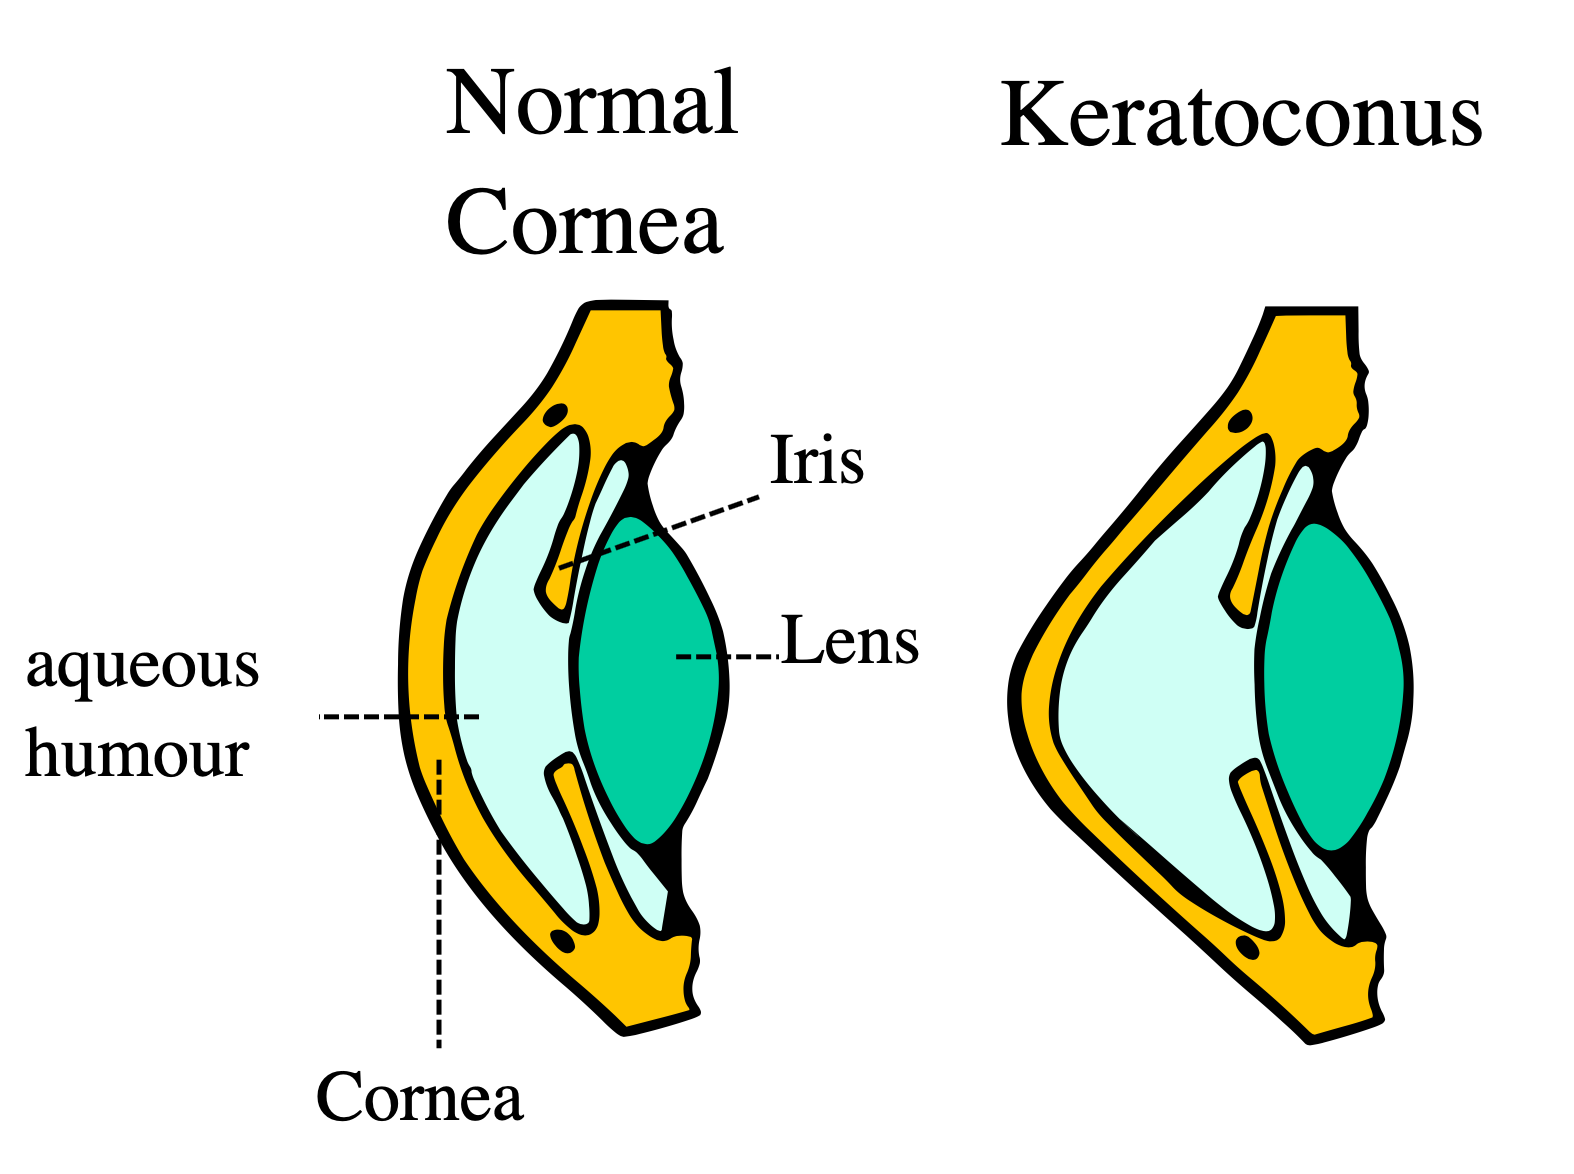 graphic of normal cornea vs keratoconus